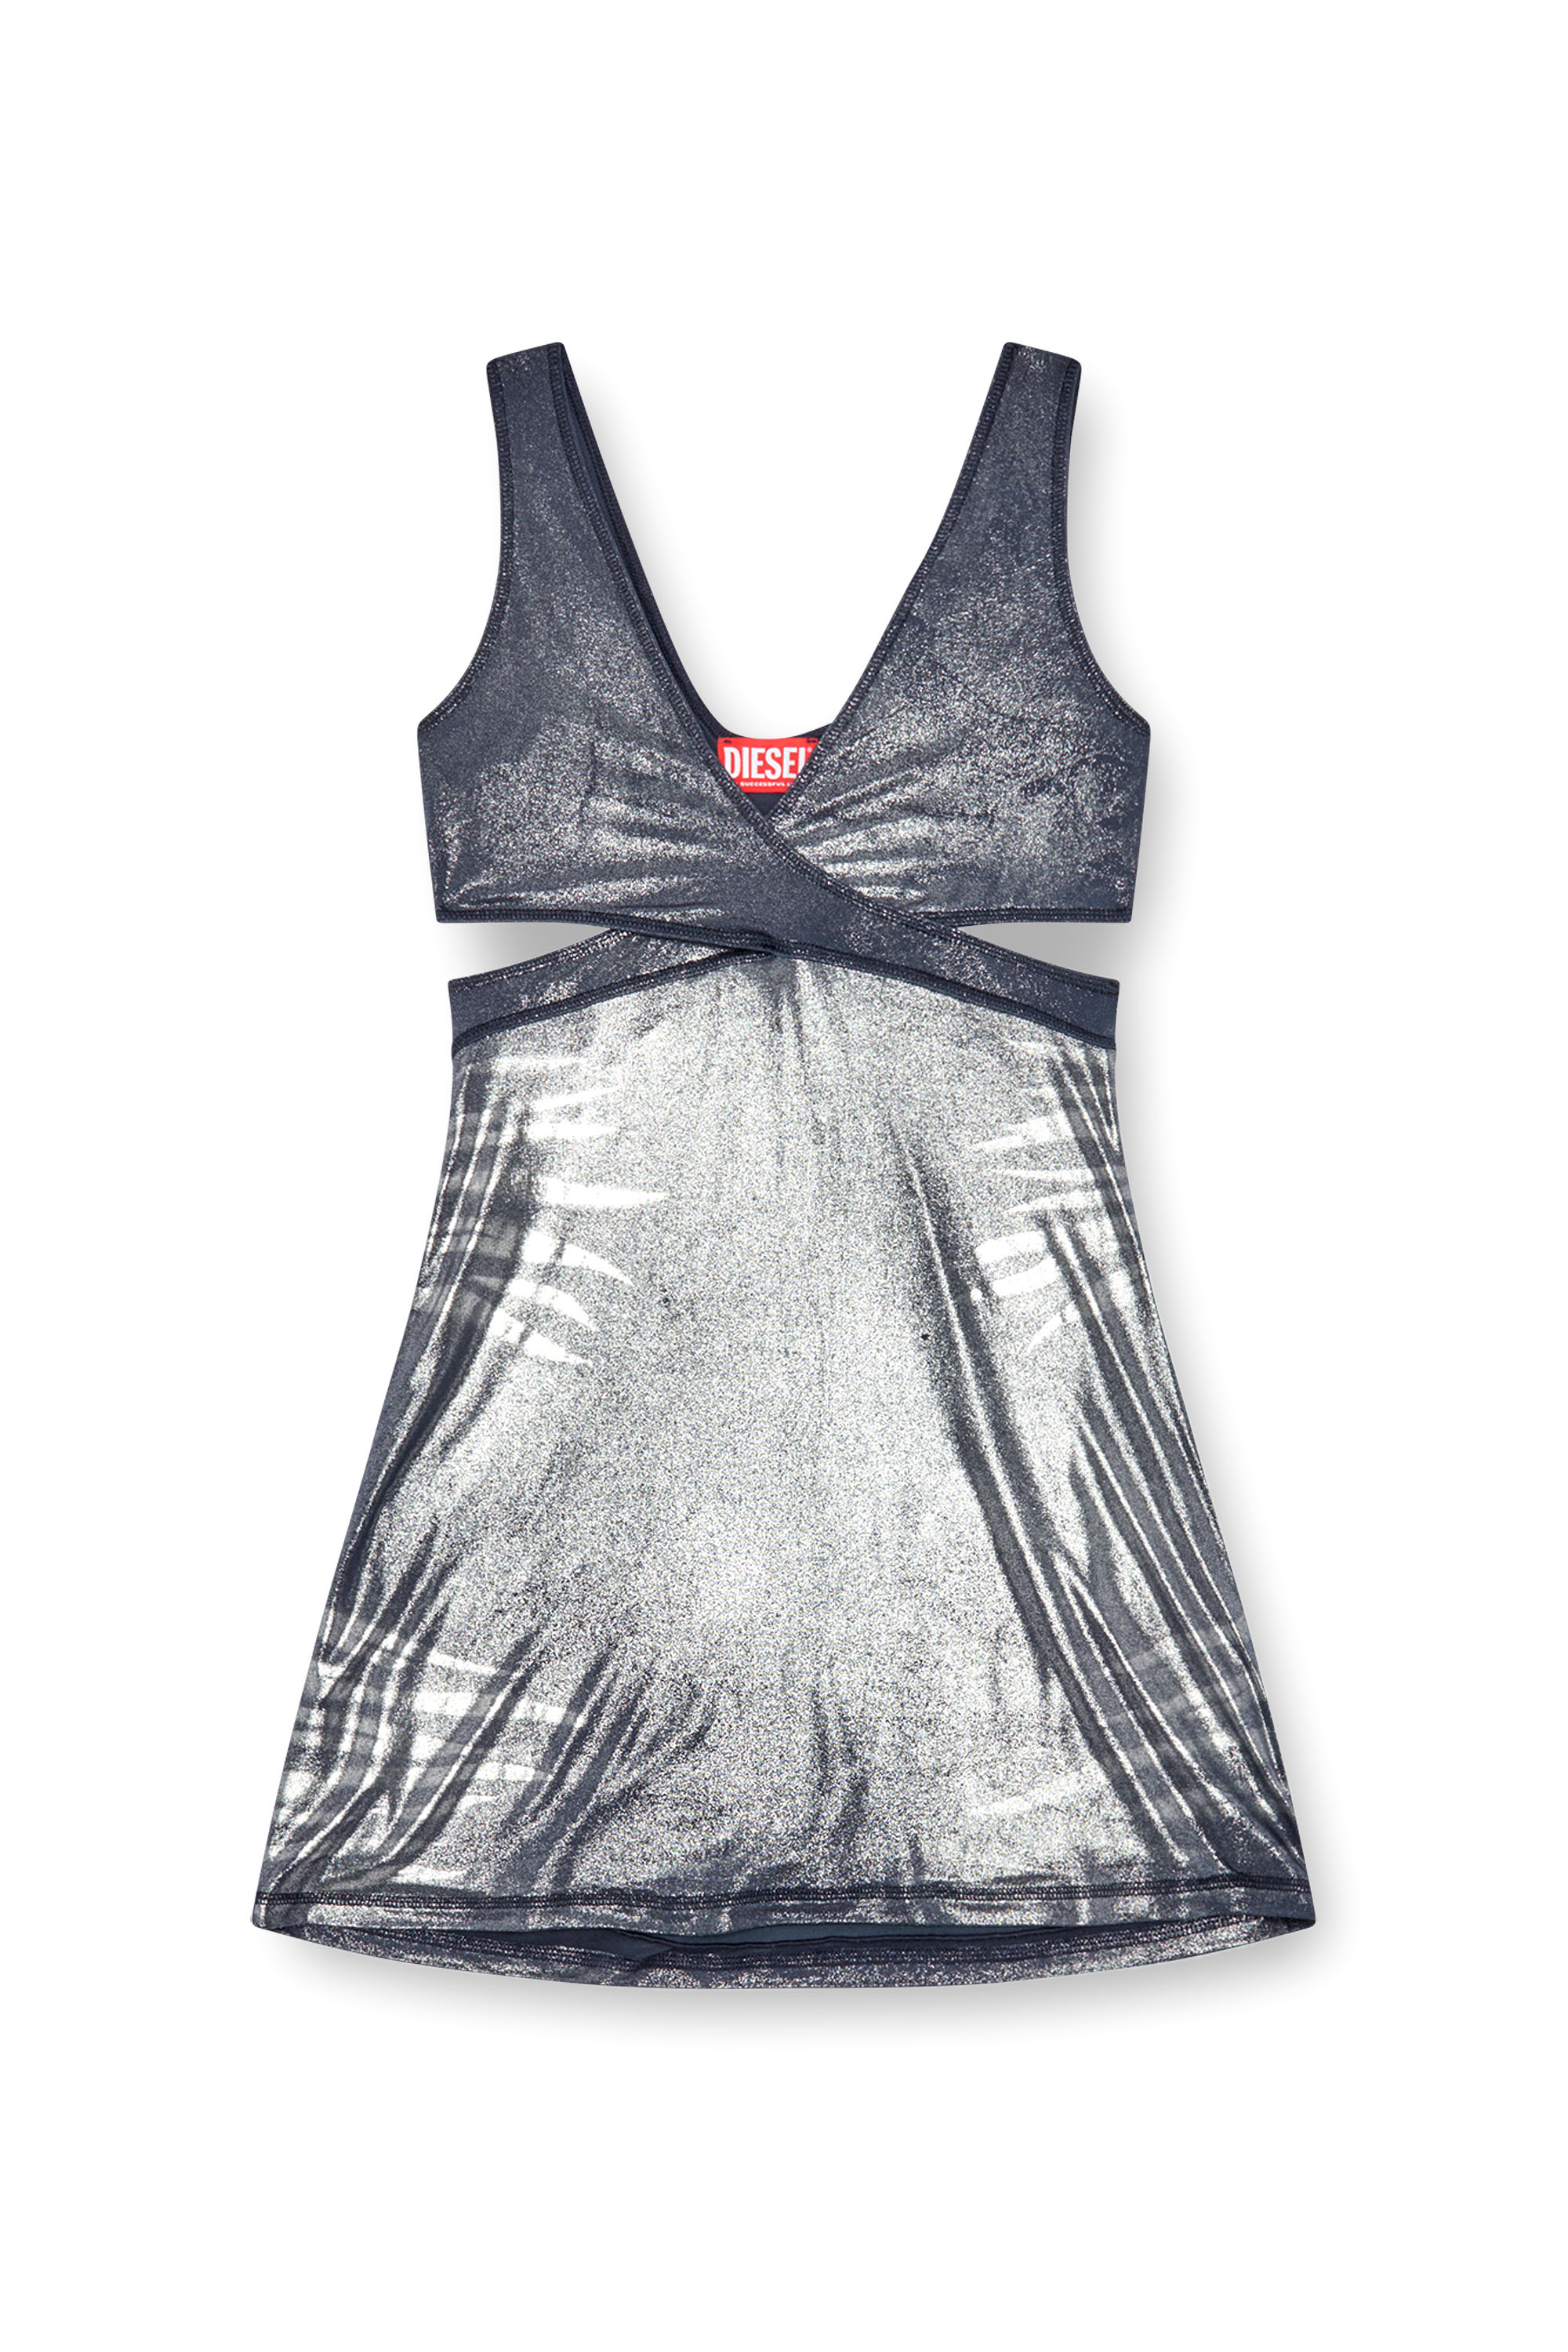 Diesel - D-FARFY, Damen Kurzes Cut-out-Kleid aus Metallic-Jersey in Bunt - Image 1